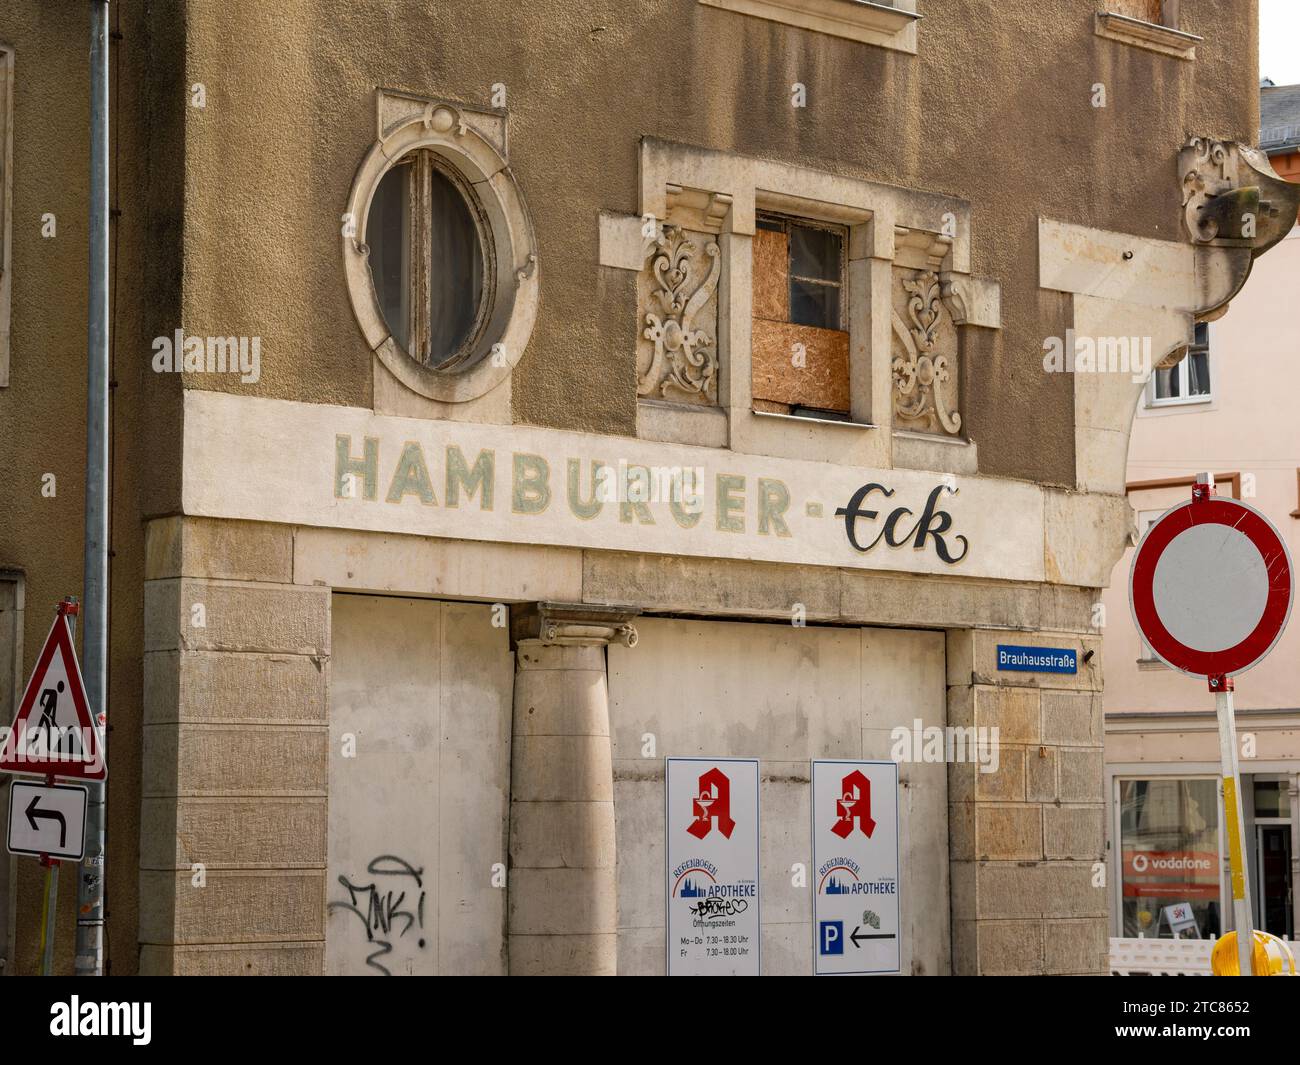 Insegna Hamburger-Eck presso l'edificio Hamburger Hof in città. La casa abbandonata è una rovina in città. Le condizioni dell'edificio sono cattive. Foto Stock